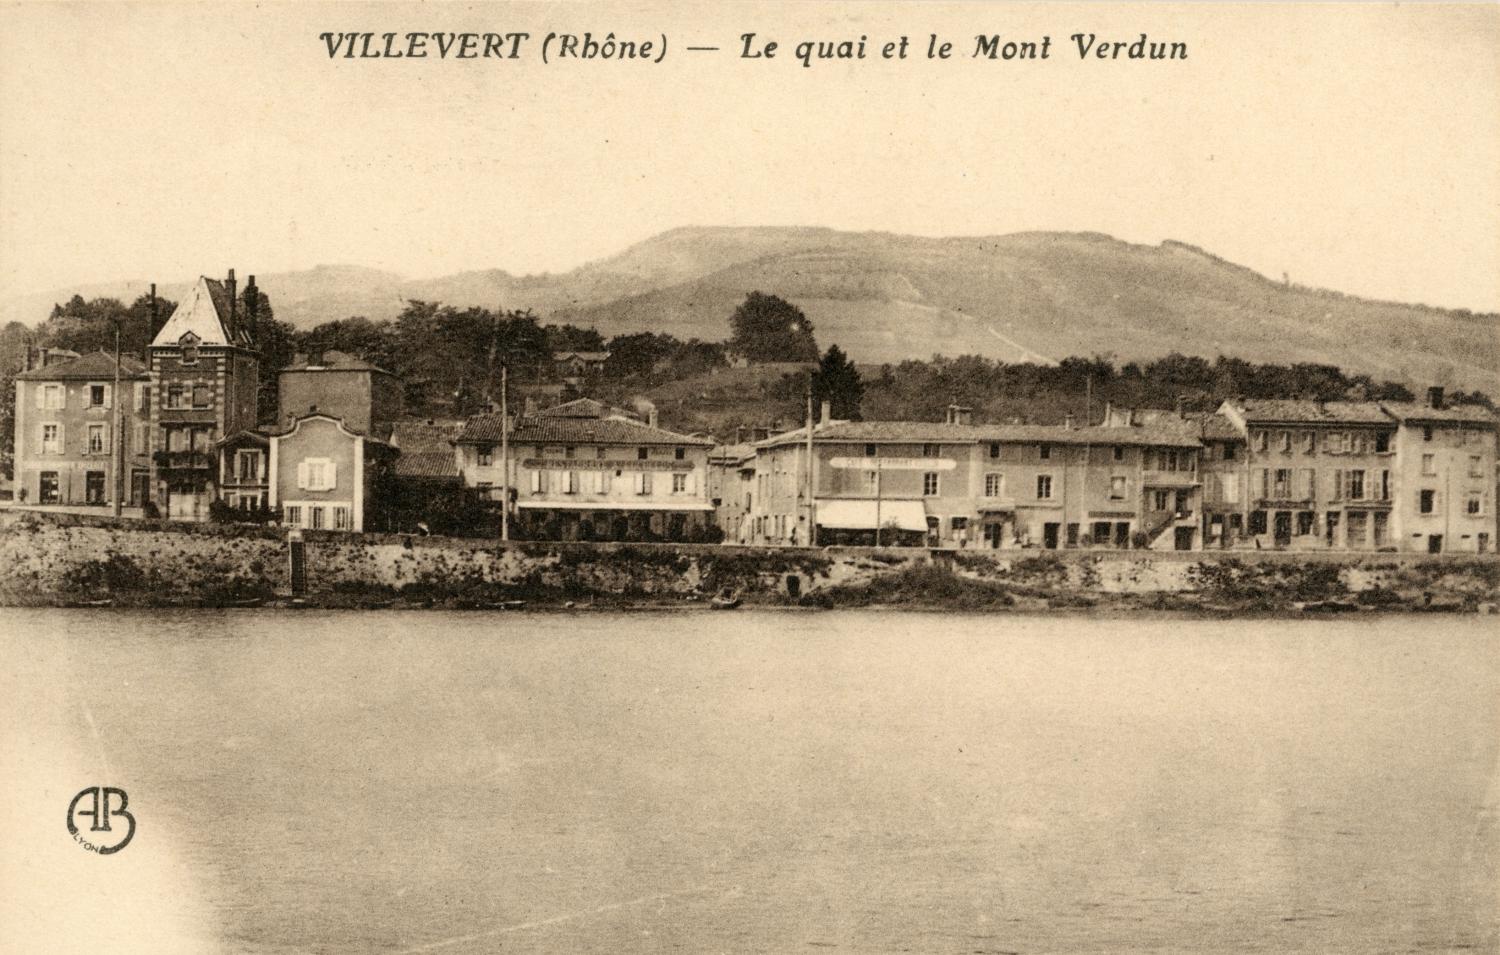 Villevert (Rhône). - Le quai et le mont Verdun